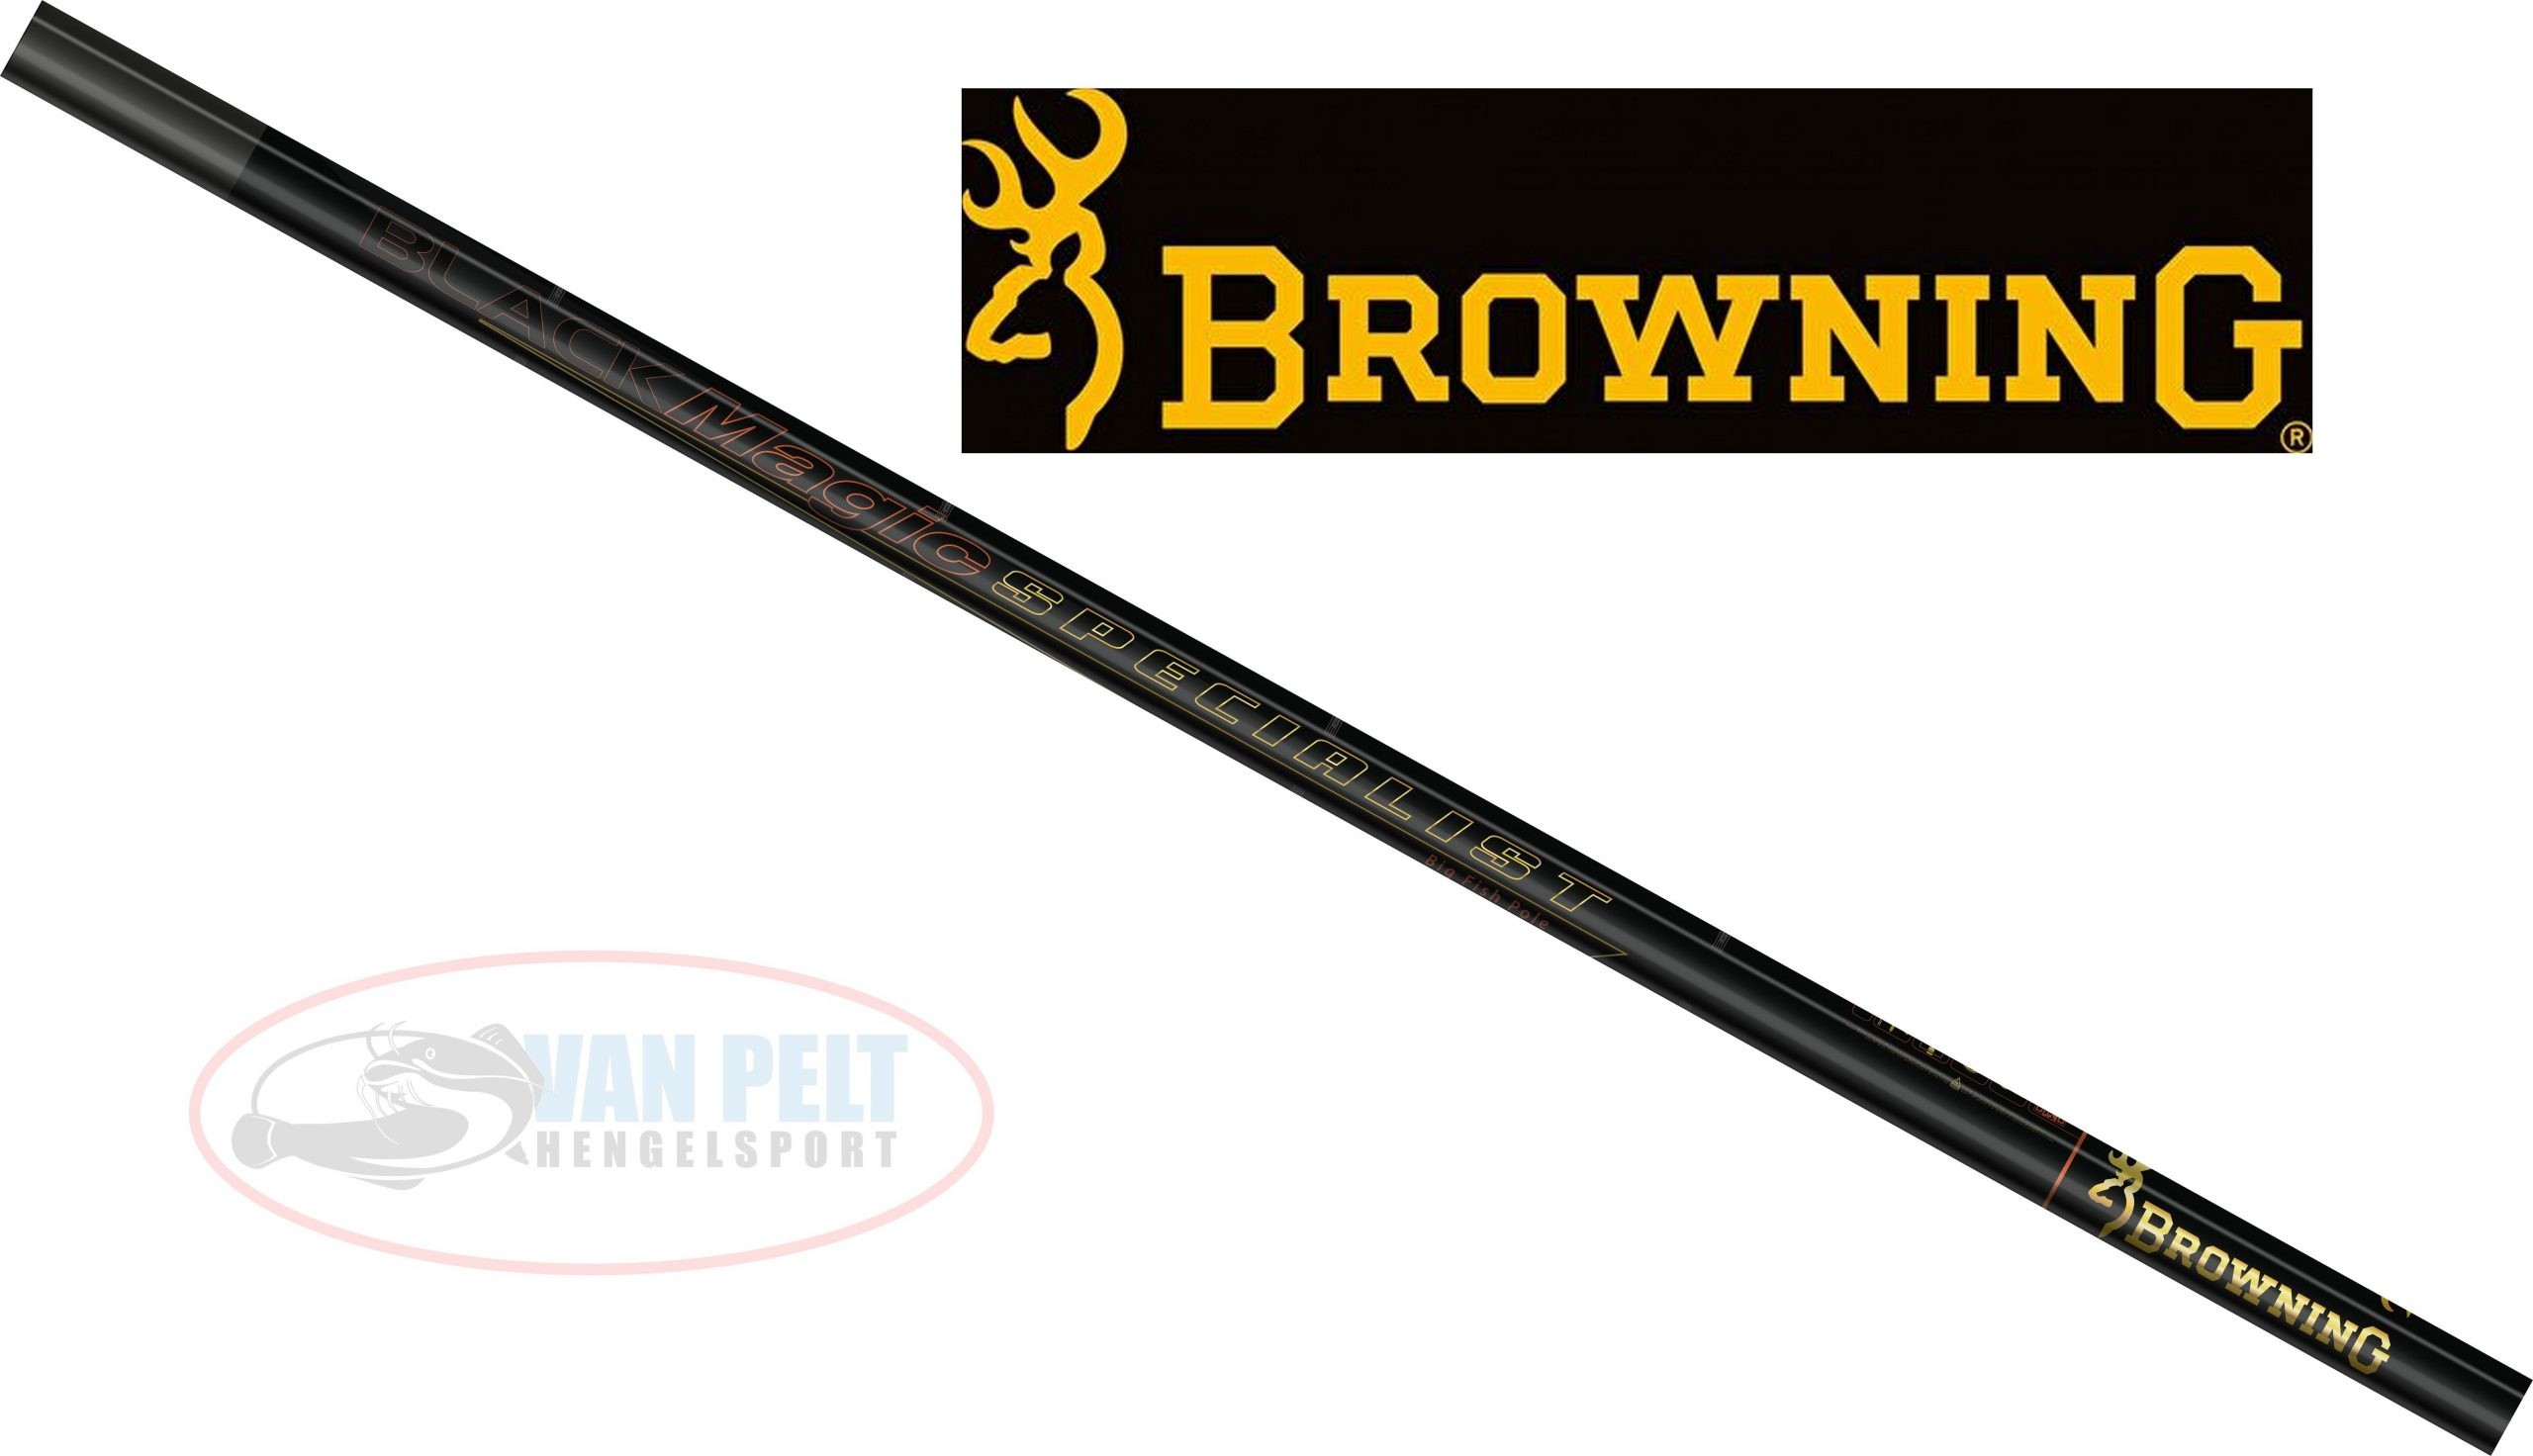 Een centrale tool die een belangrijke rol speelt Bekend Vlot Browning Black Magic Specialist 10 m set, 20+, pulla geplaatst – Prijs =  INCL 2 pulla topsets & cupping set – Hengelsport-outlet.be